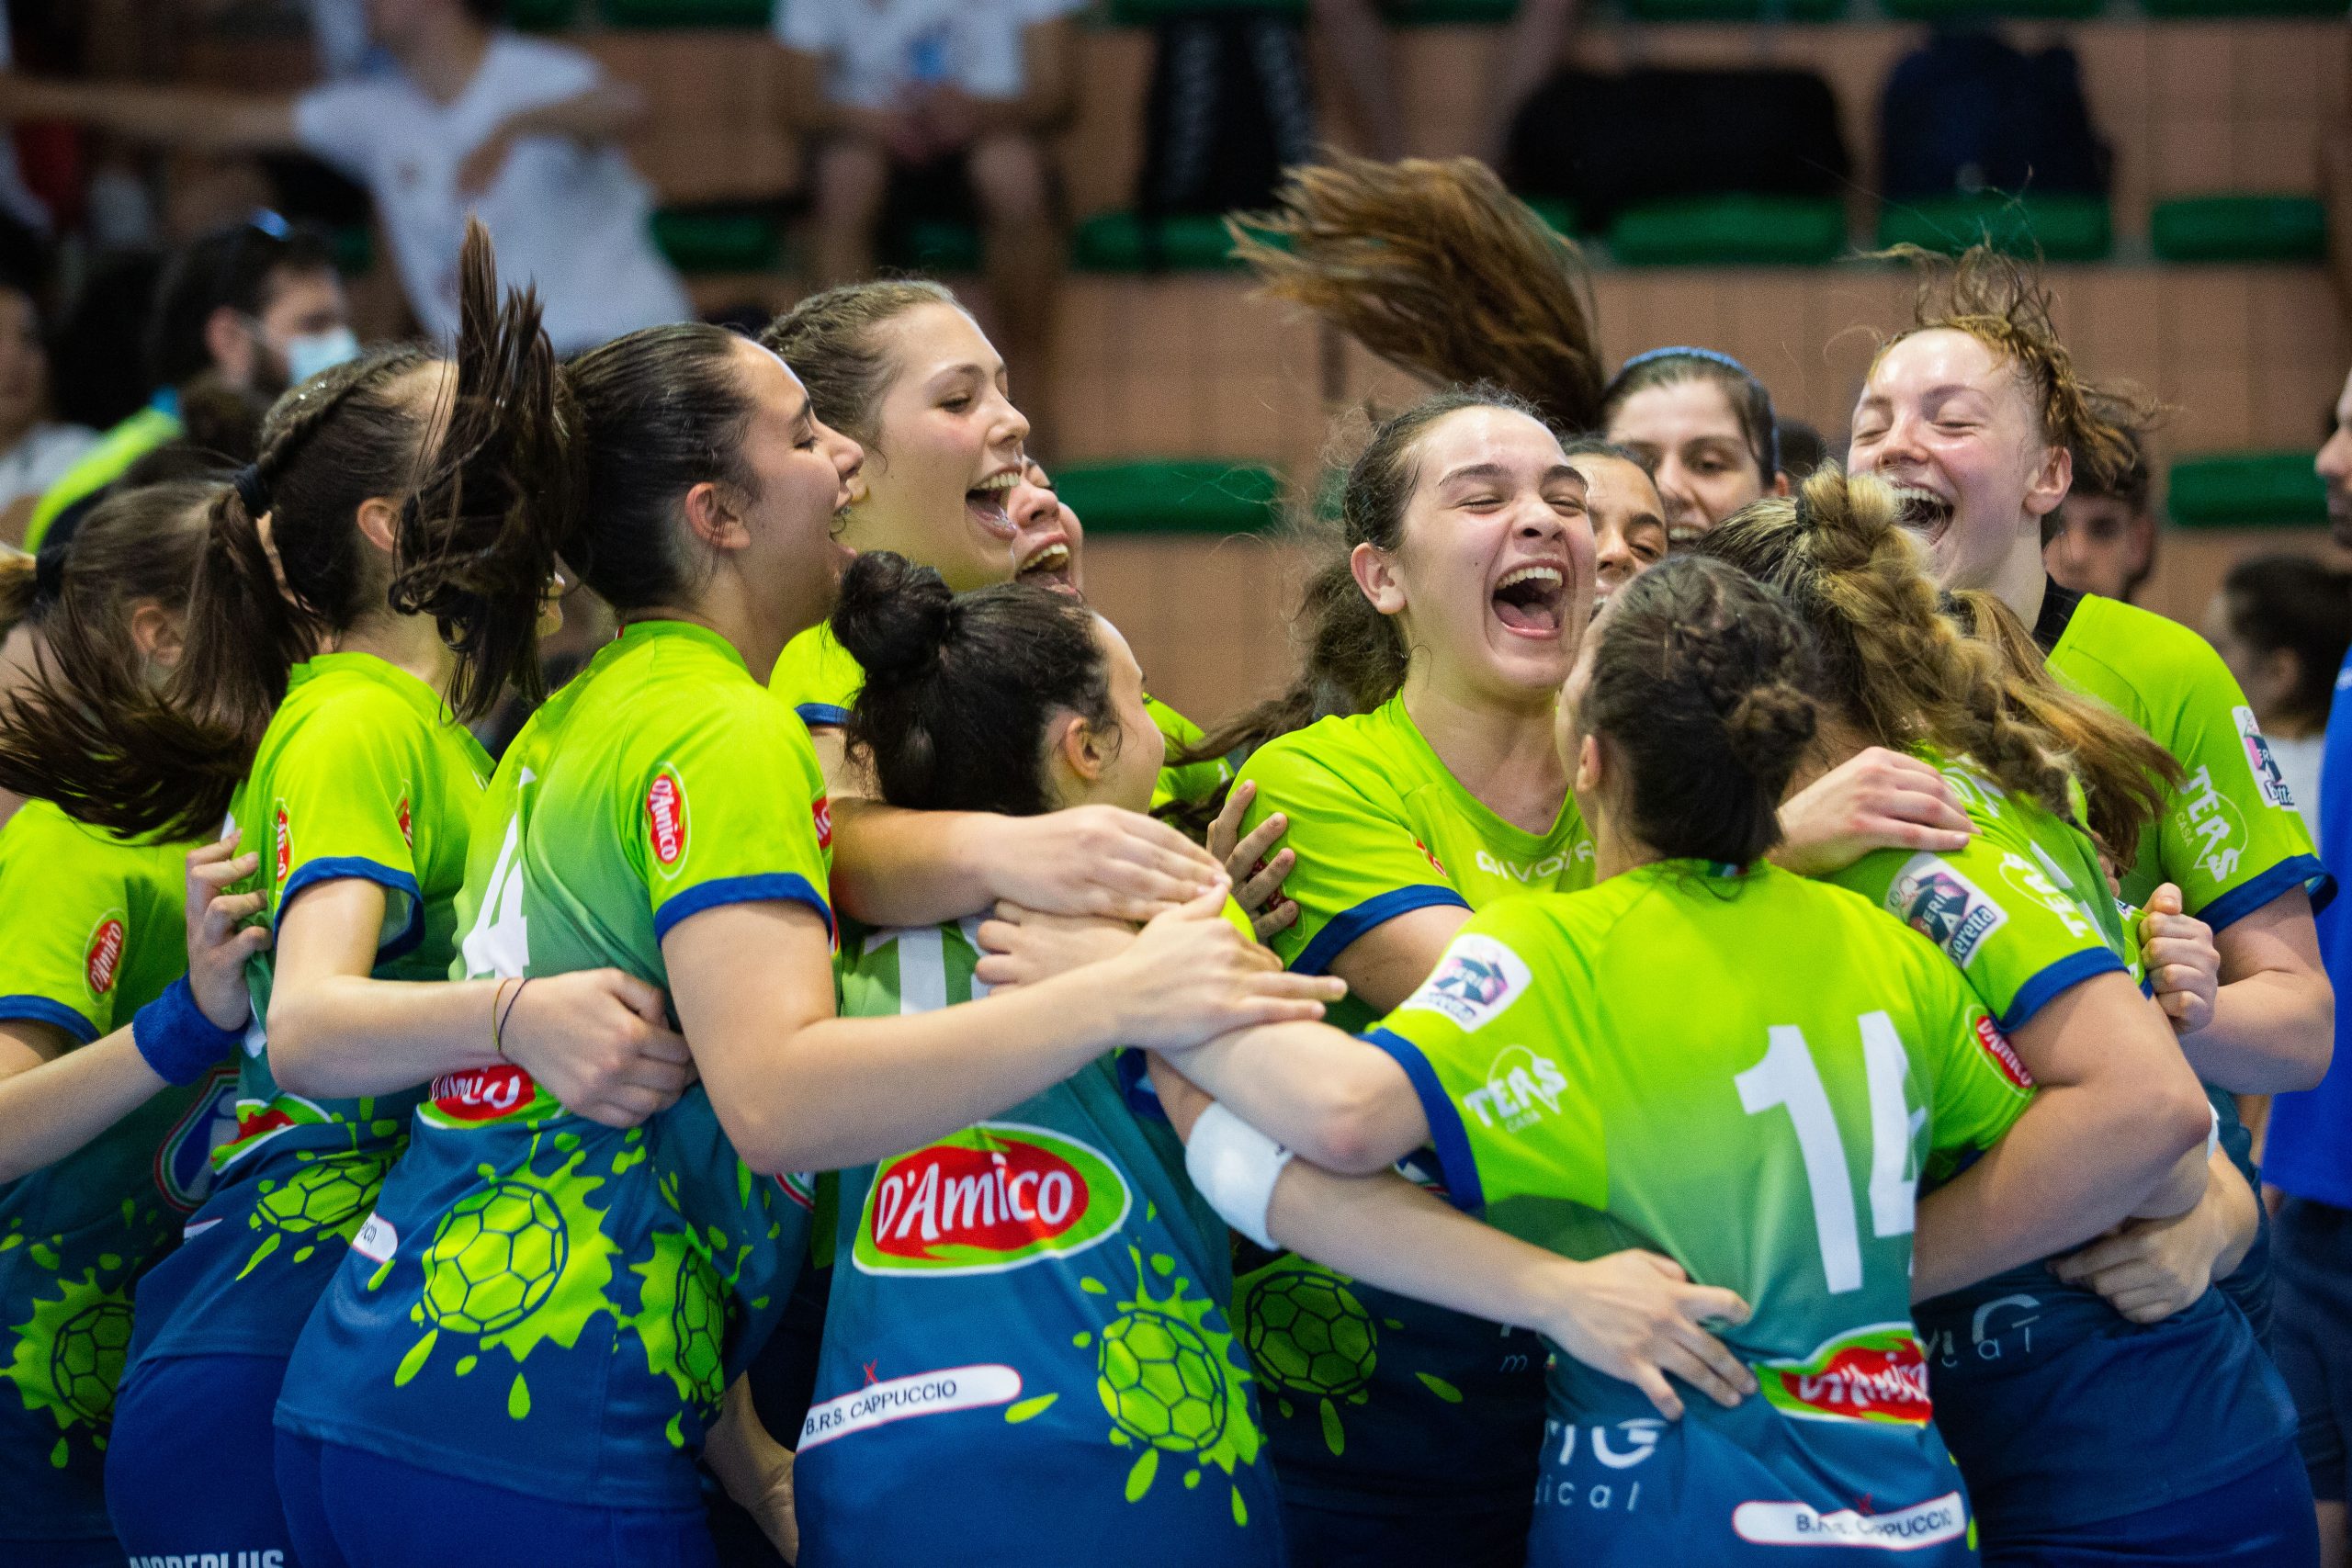 Salerno: Youth League Under 20 femminile, Jomi in finale Scudetto